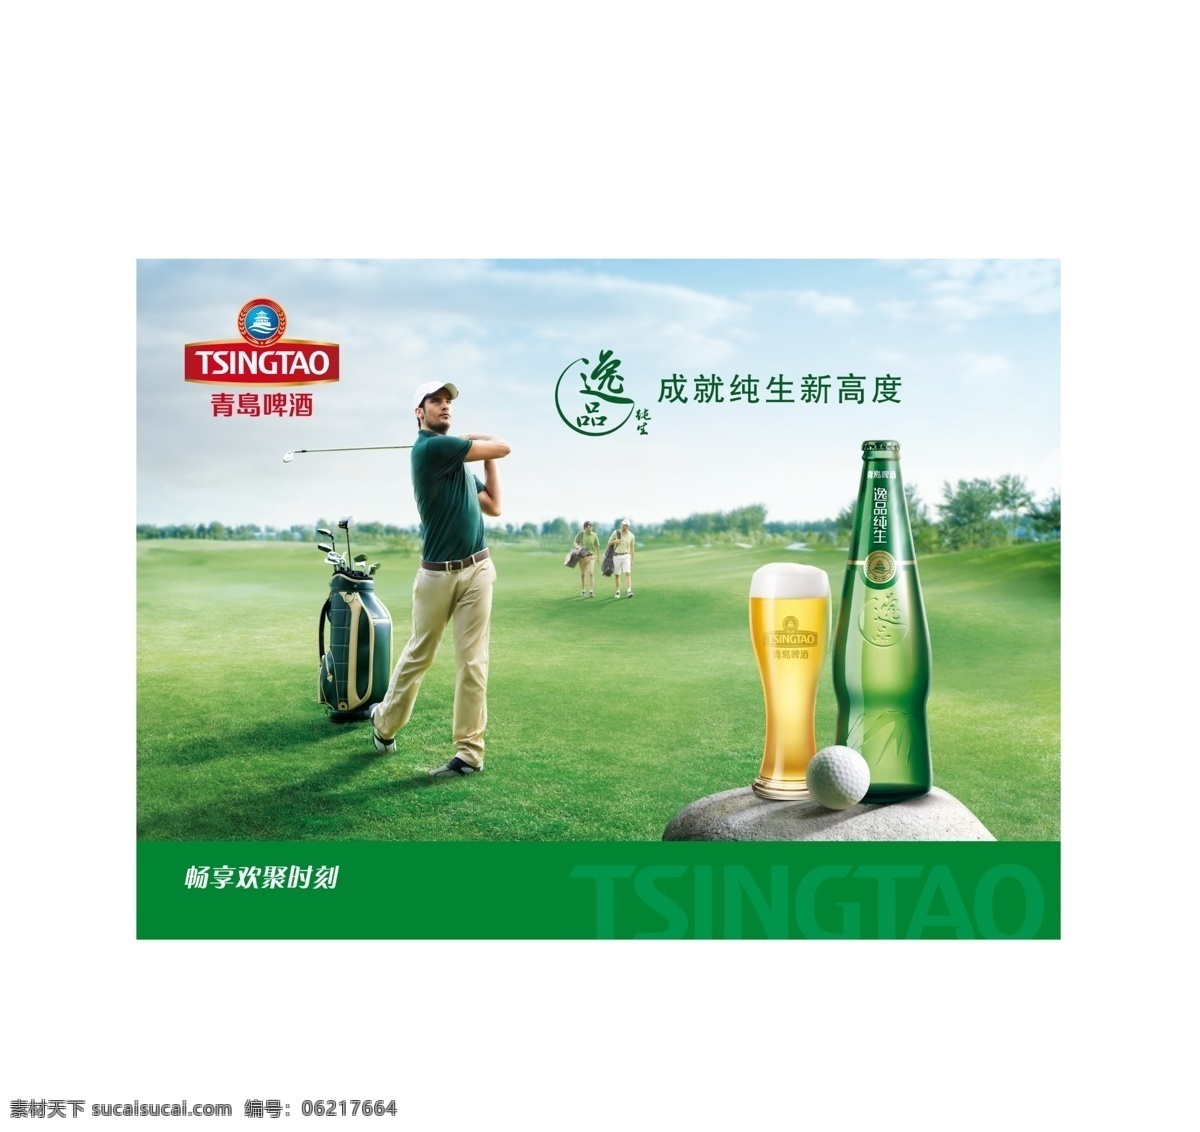 青岛啤酒图片 青岛啤酒 海报 纯生 logo 啤酒 室内广告设计